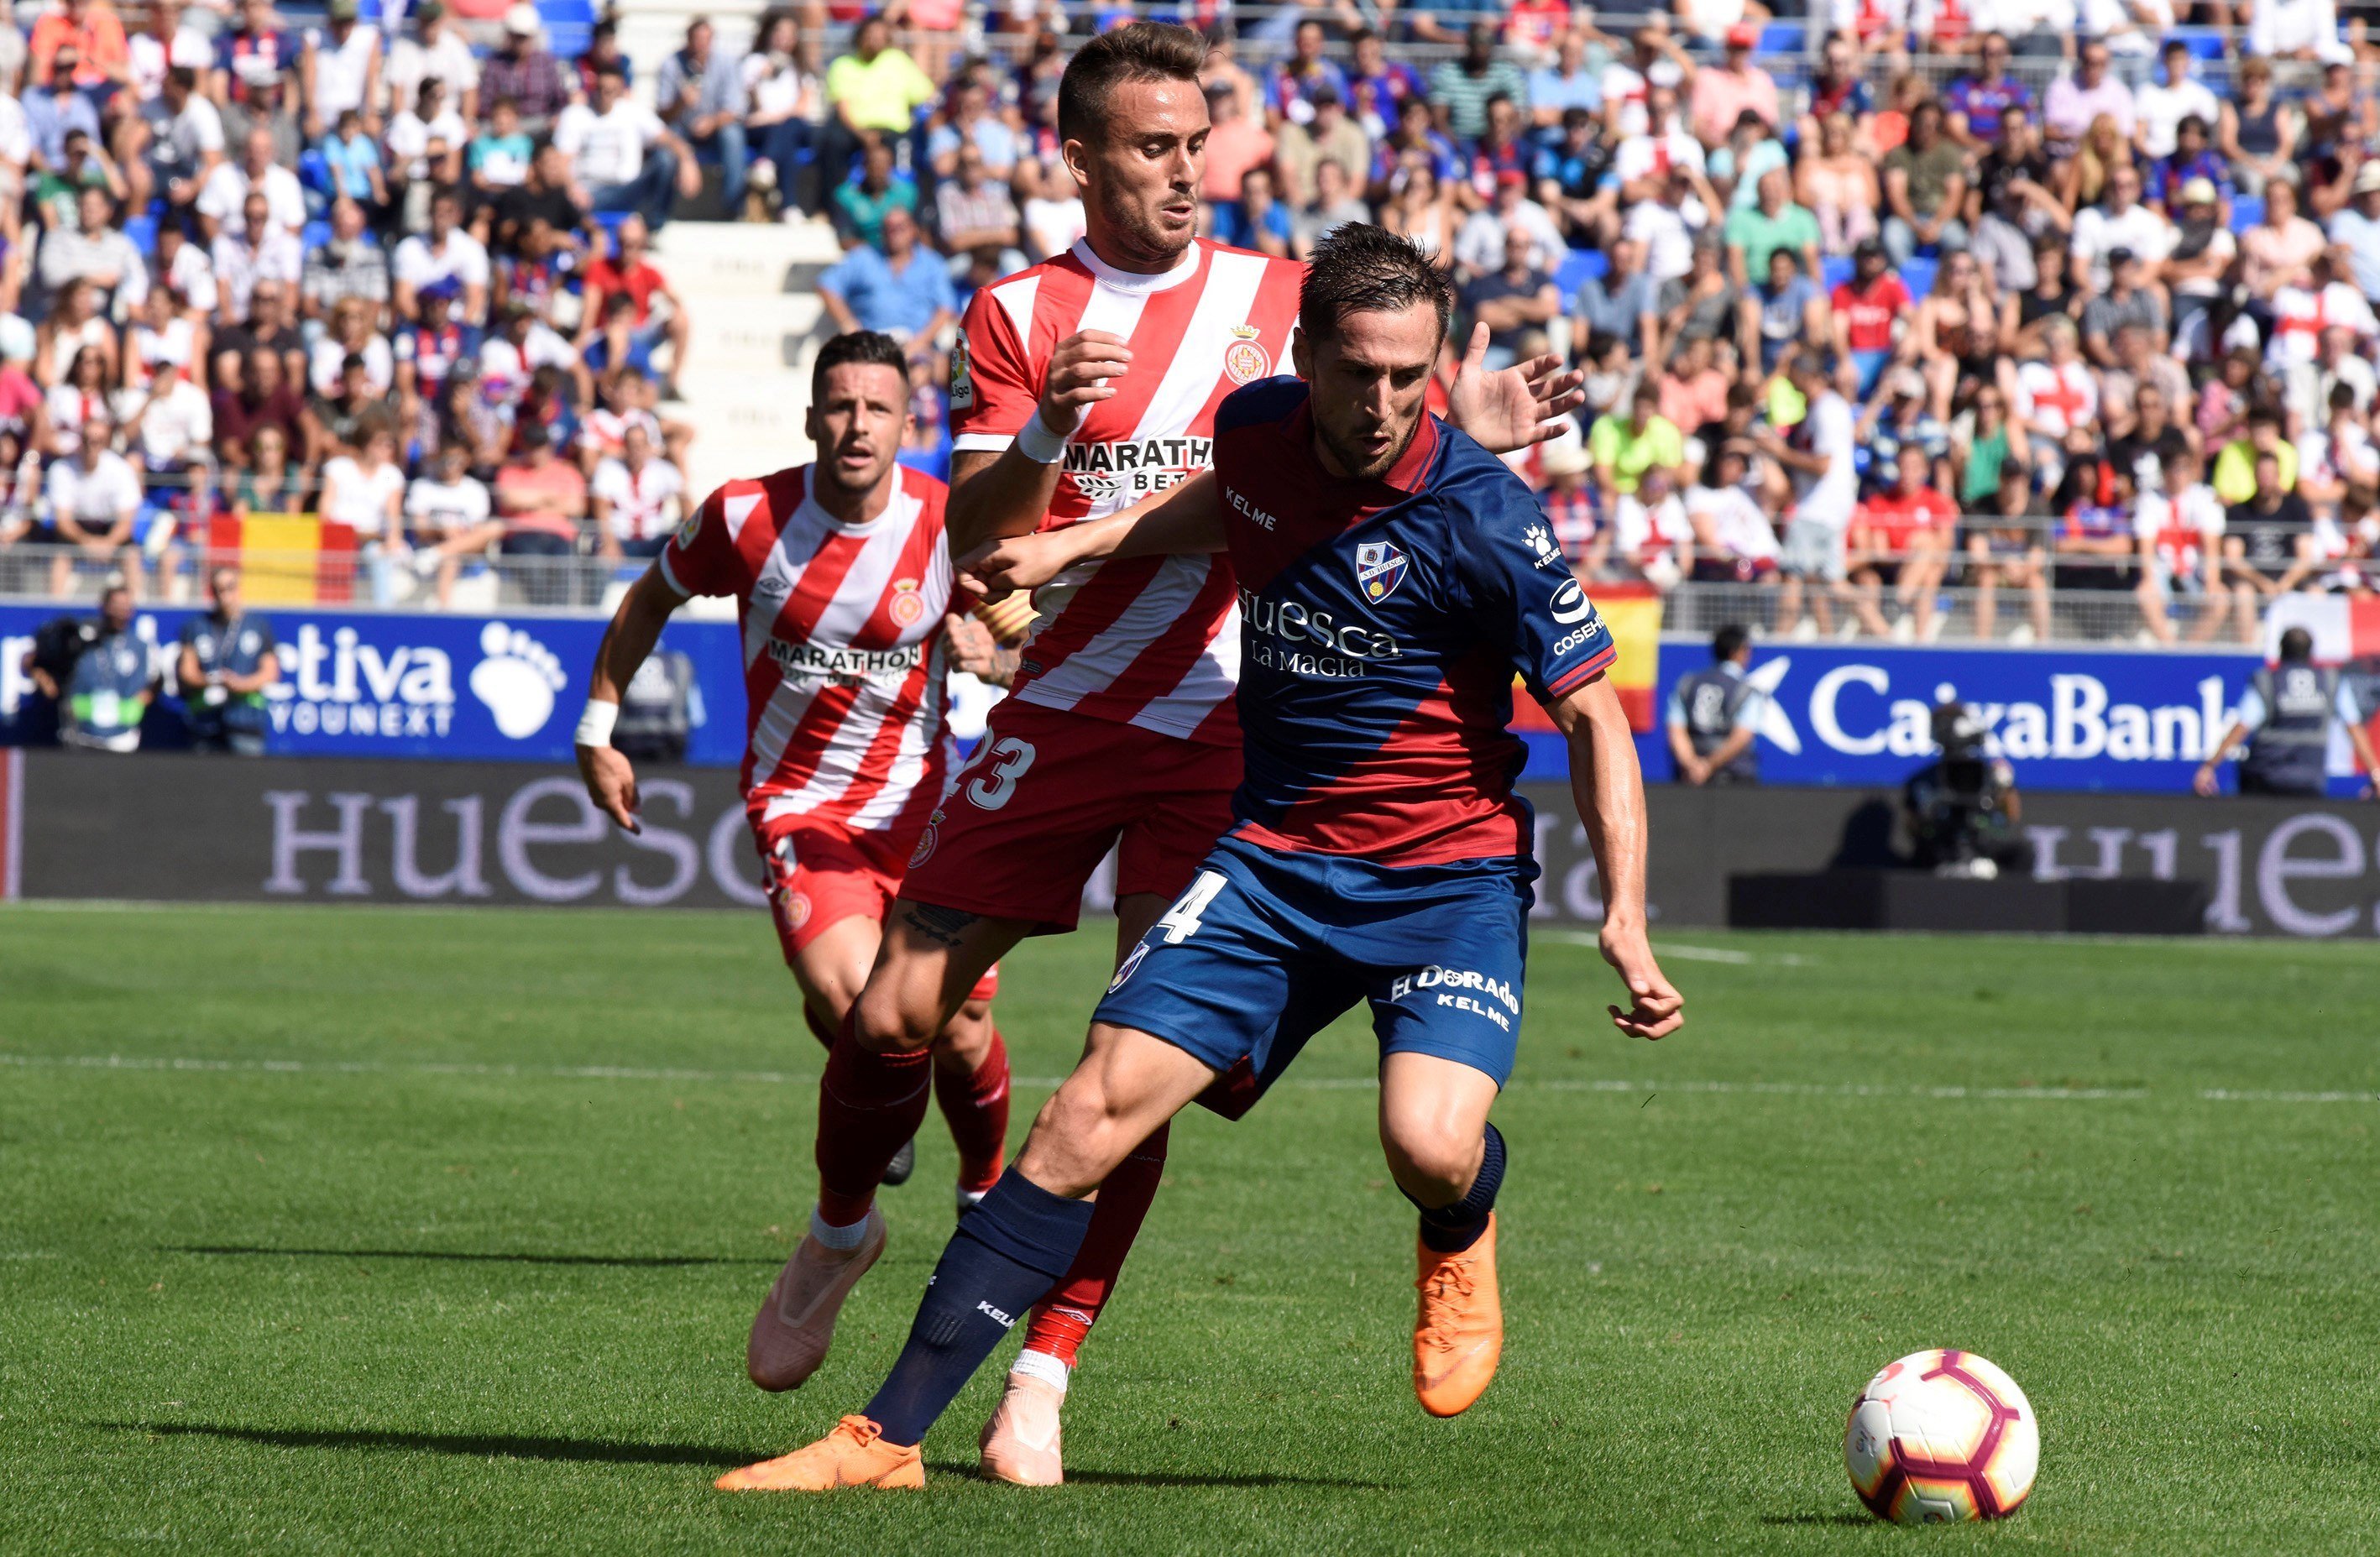 Eusebio peca de conservador y el Girona pierde dos puntos (1-1)